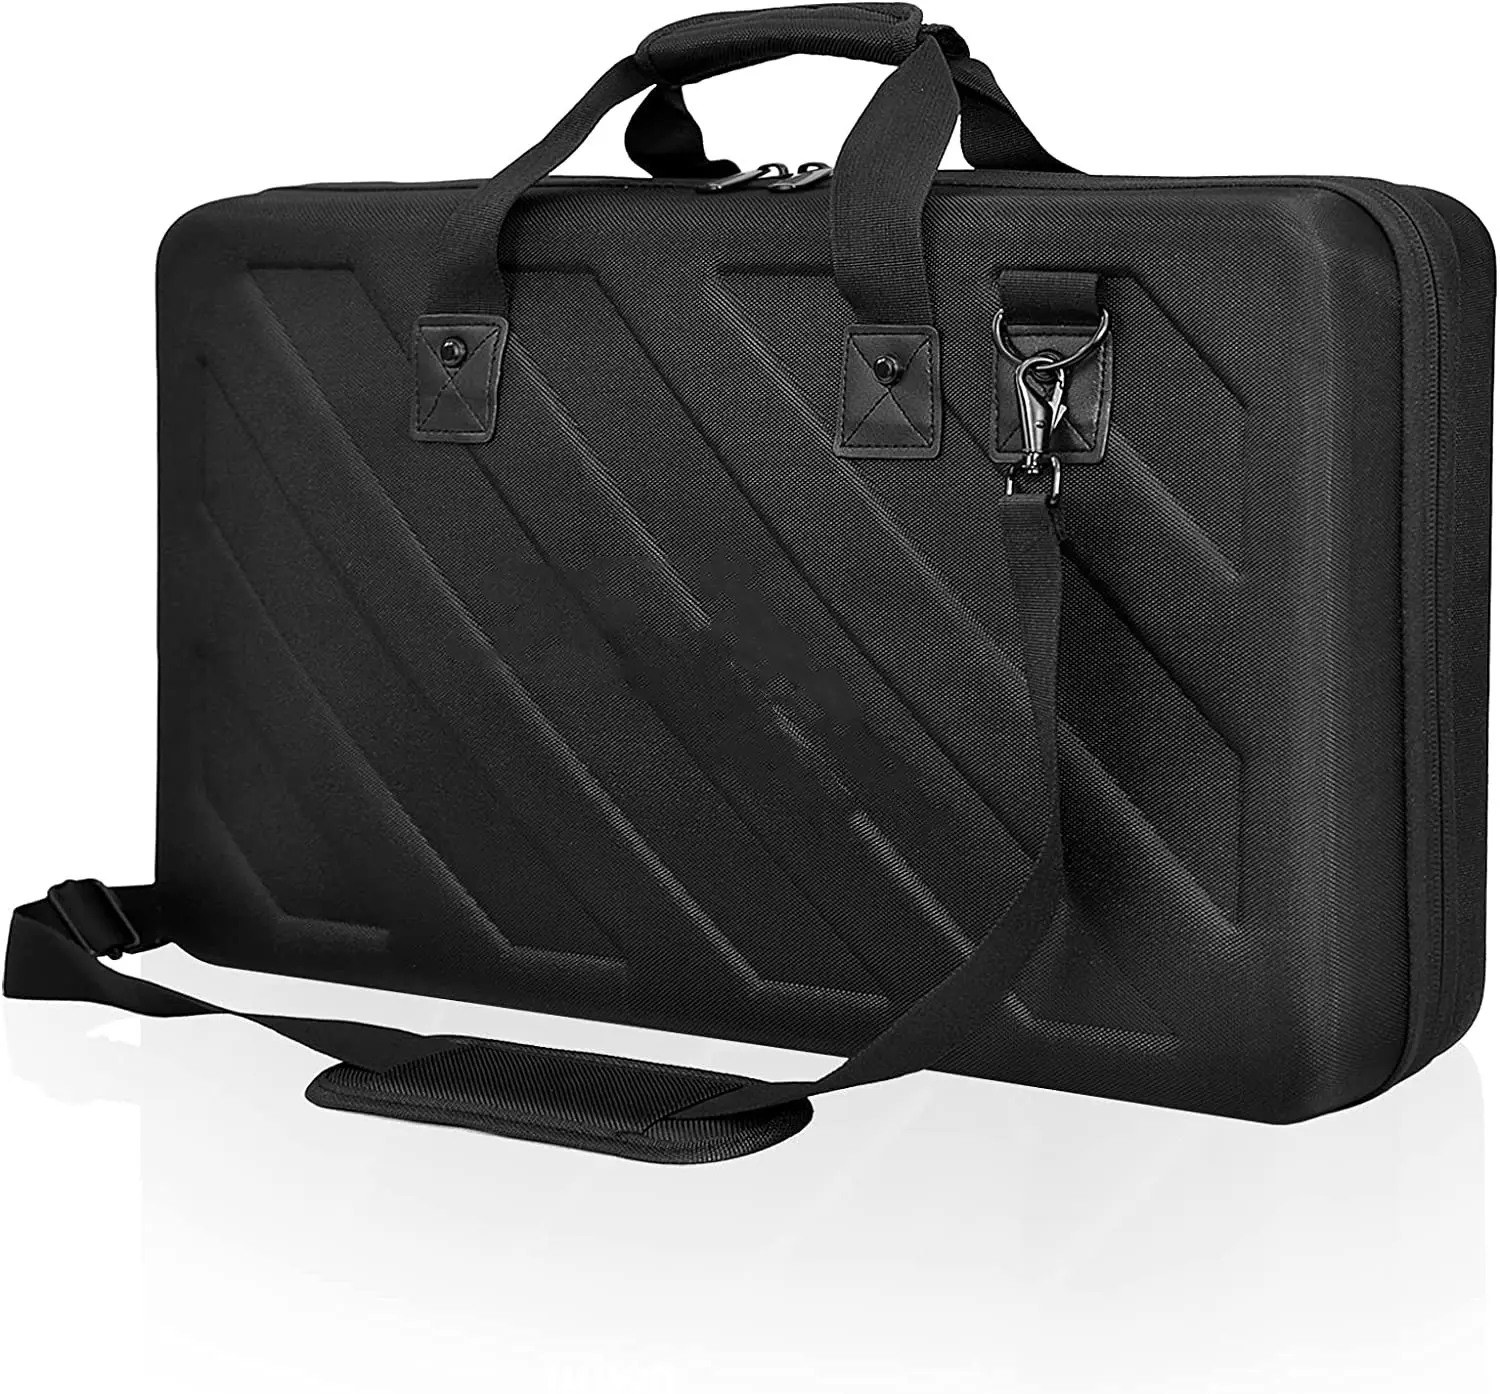 Taşınabilir hafif sert EVA saklama kutusu uyar DJ makinesi RX SX SX2 SX3 MC7000 DJ taşıma çantası seyahat çantası